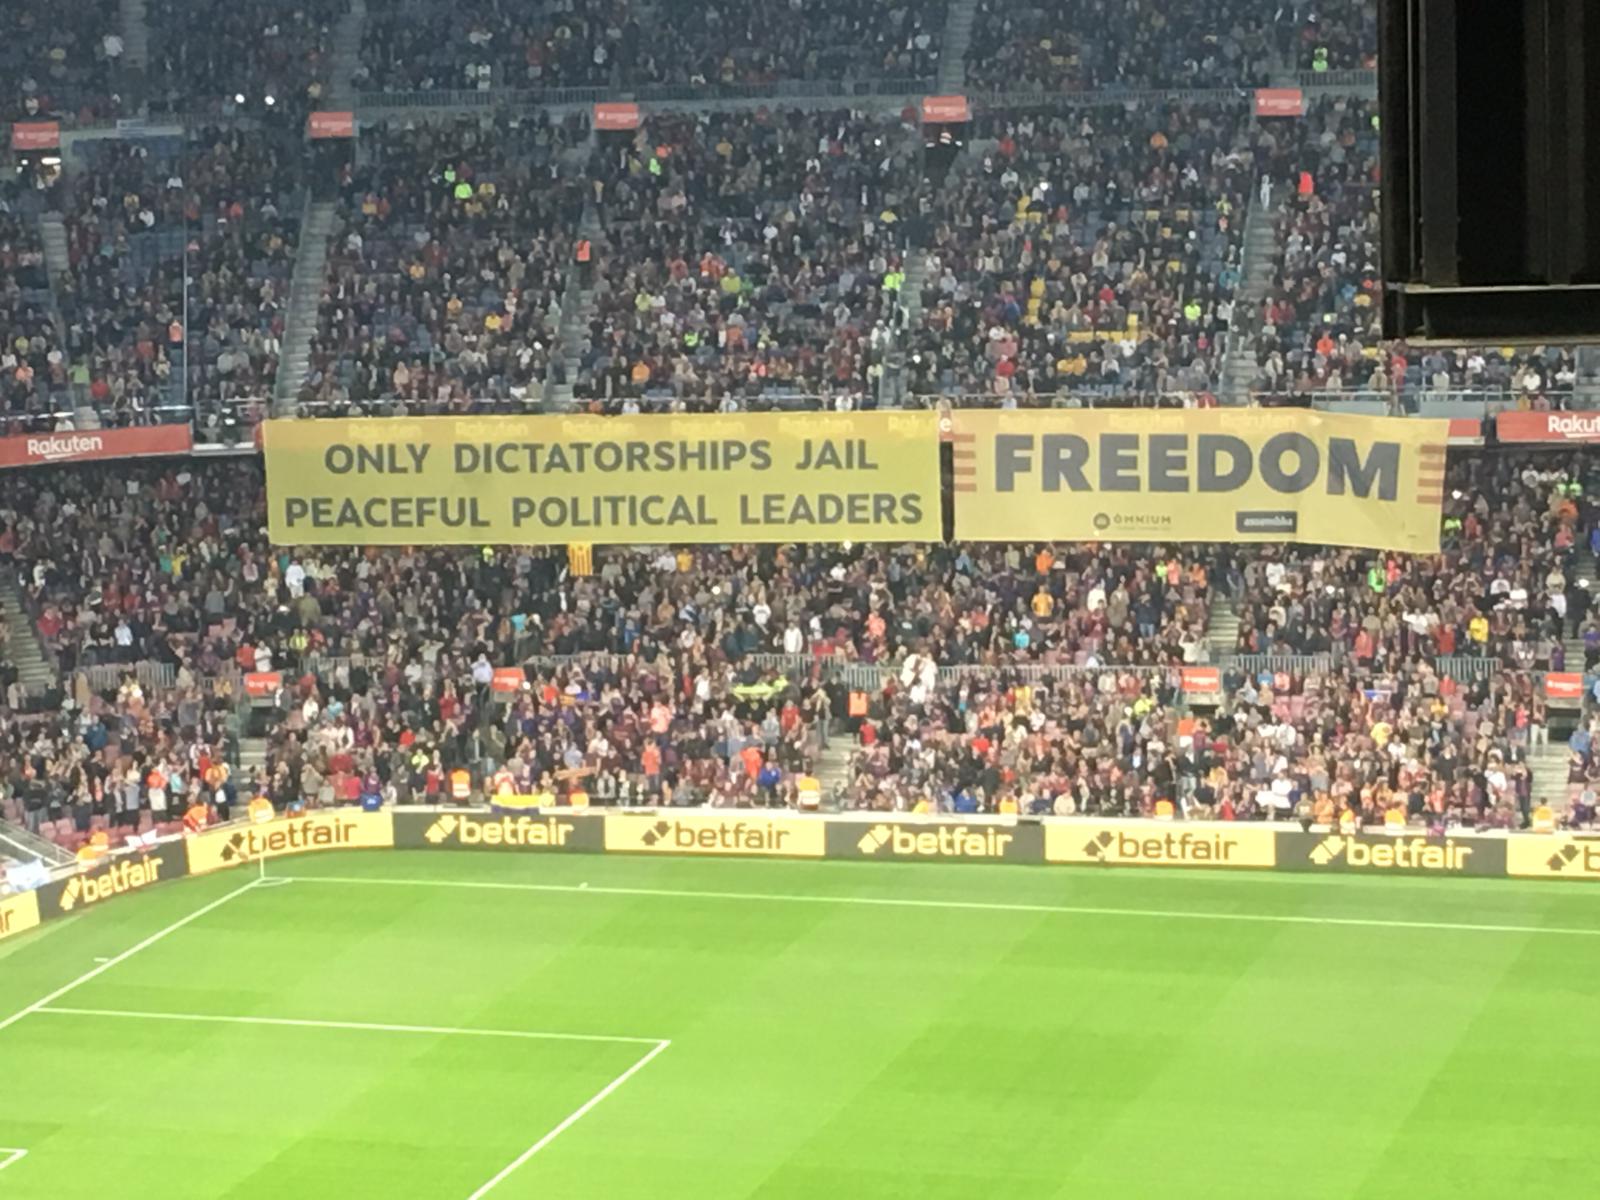 "Sólo las dictaduras encarcelan a líderes políticos pacíficos", en una pancarta del Camp Nou